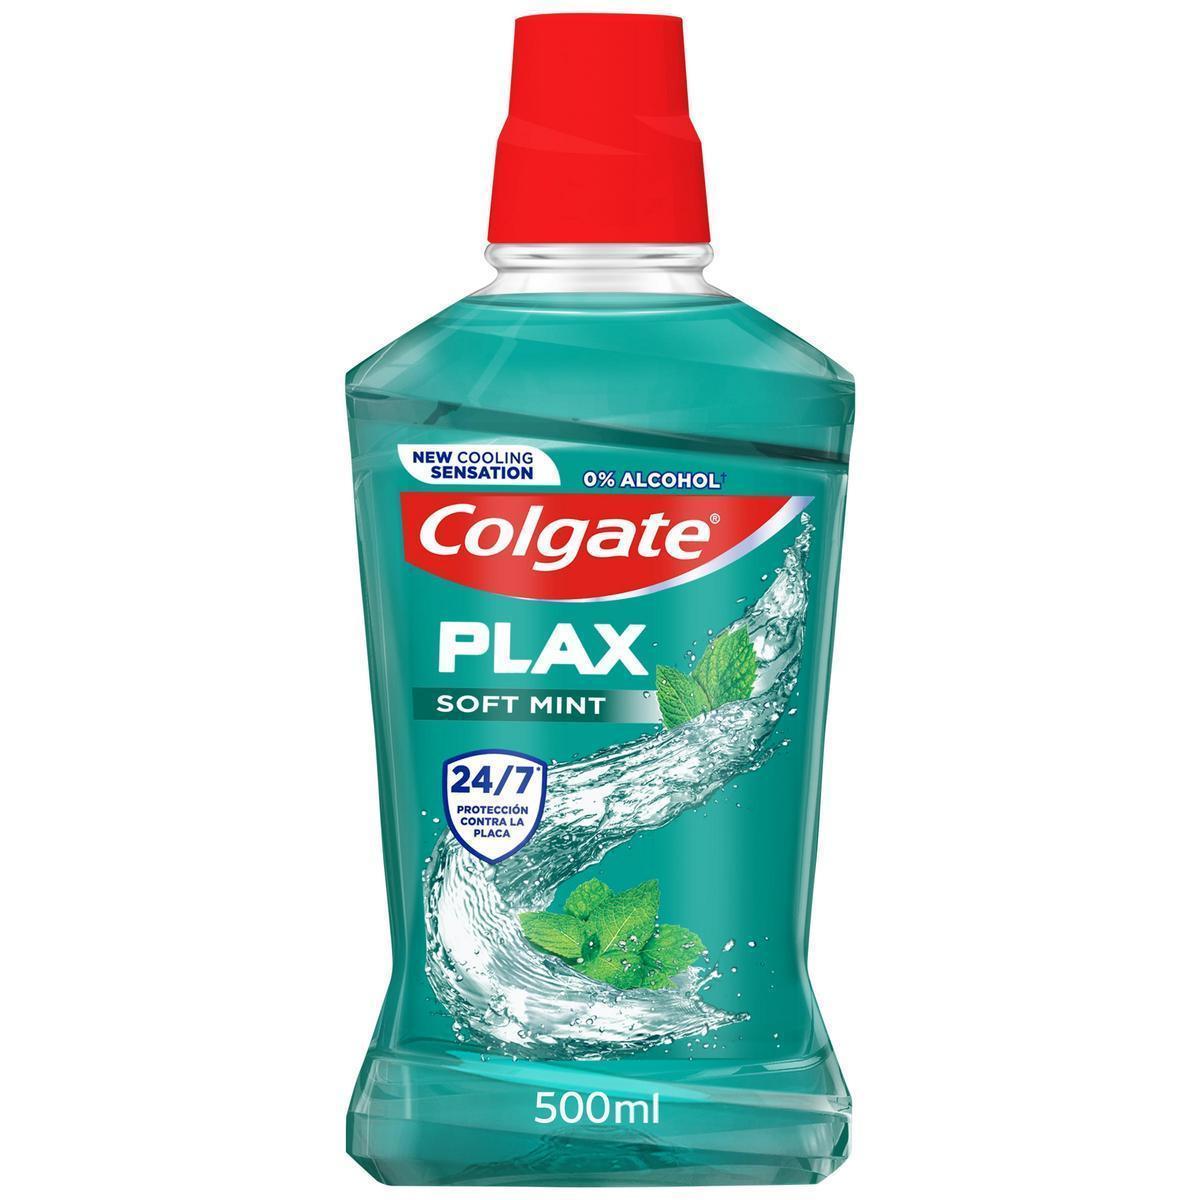 Colgate - Enjuague bucal Colgate Plax Soft Mint protección 24H, antibacteriano 500ml